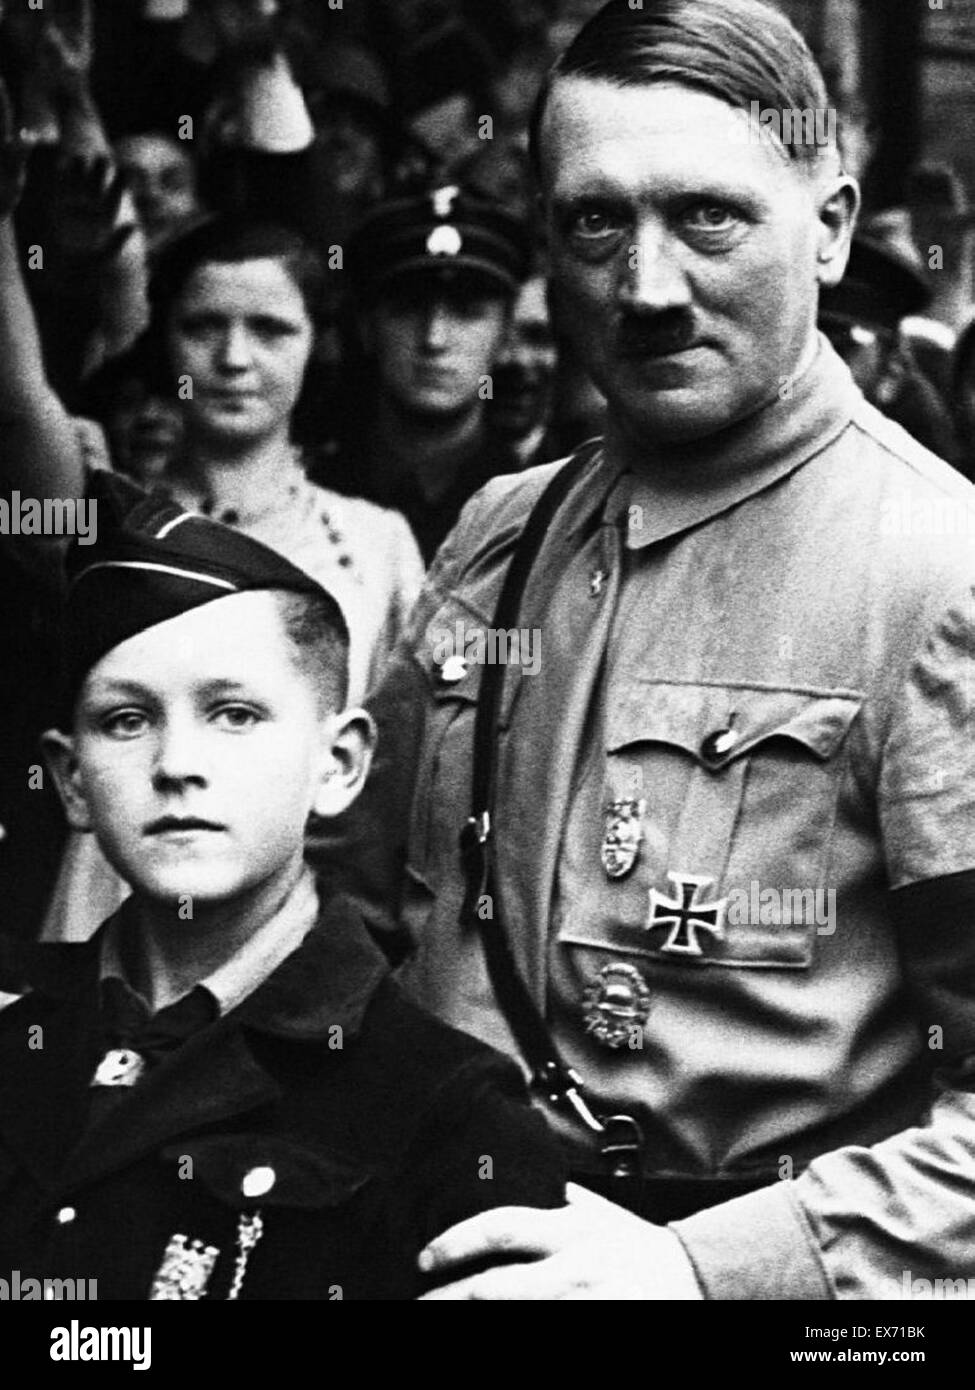 Frisur hitler jugend Hitlerjugend